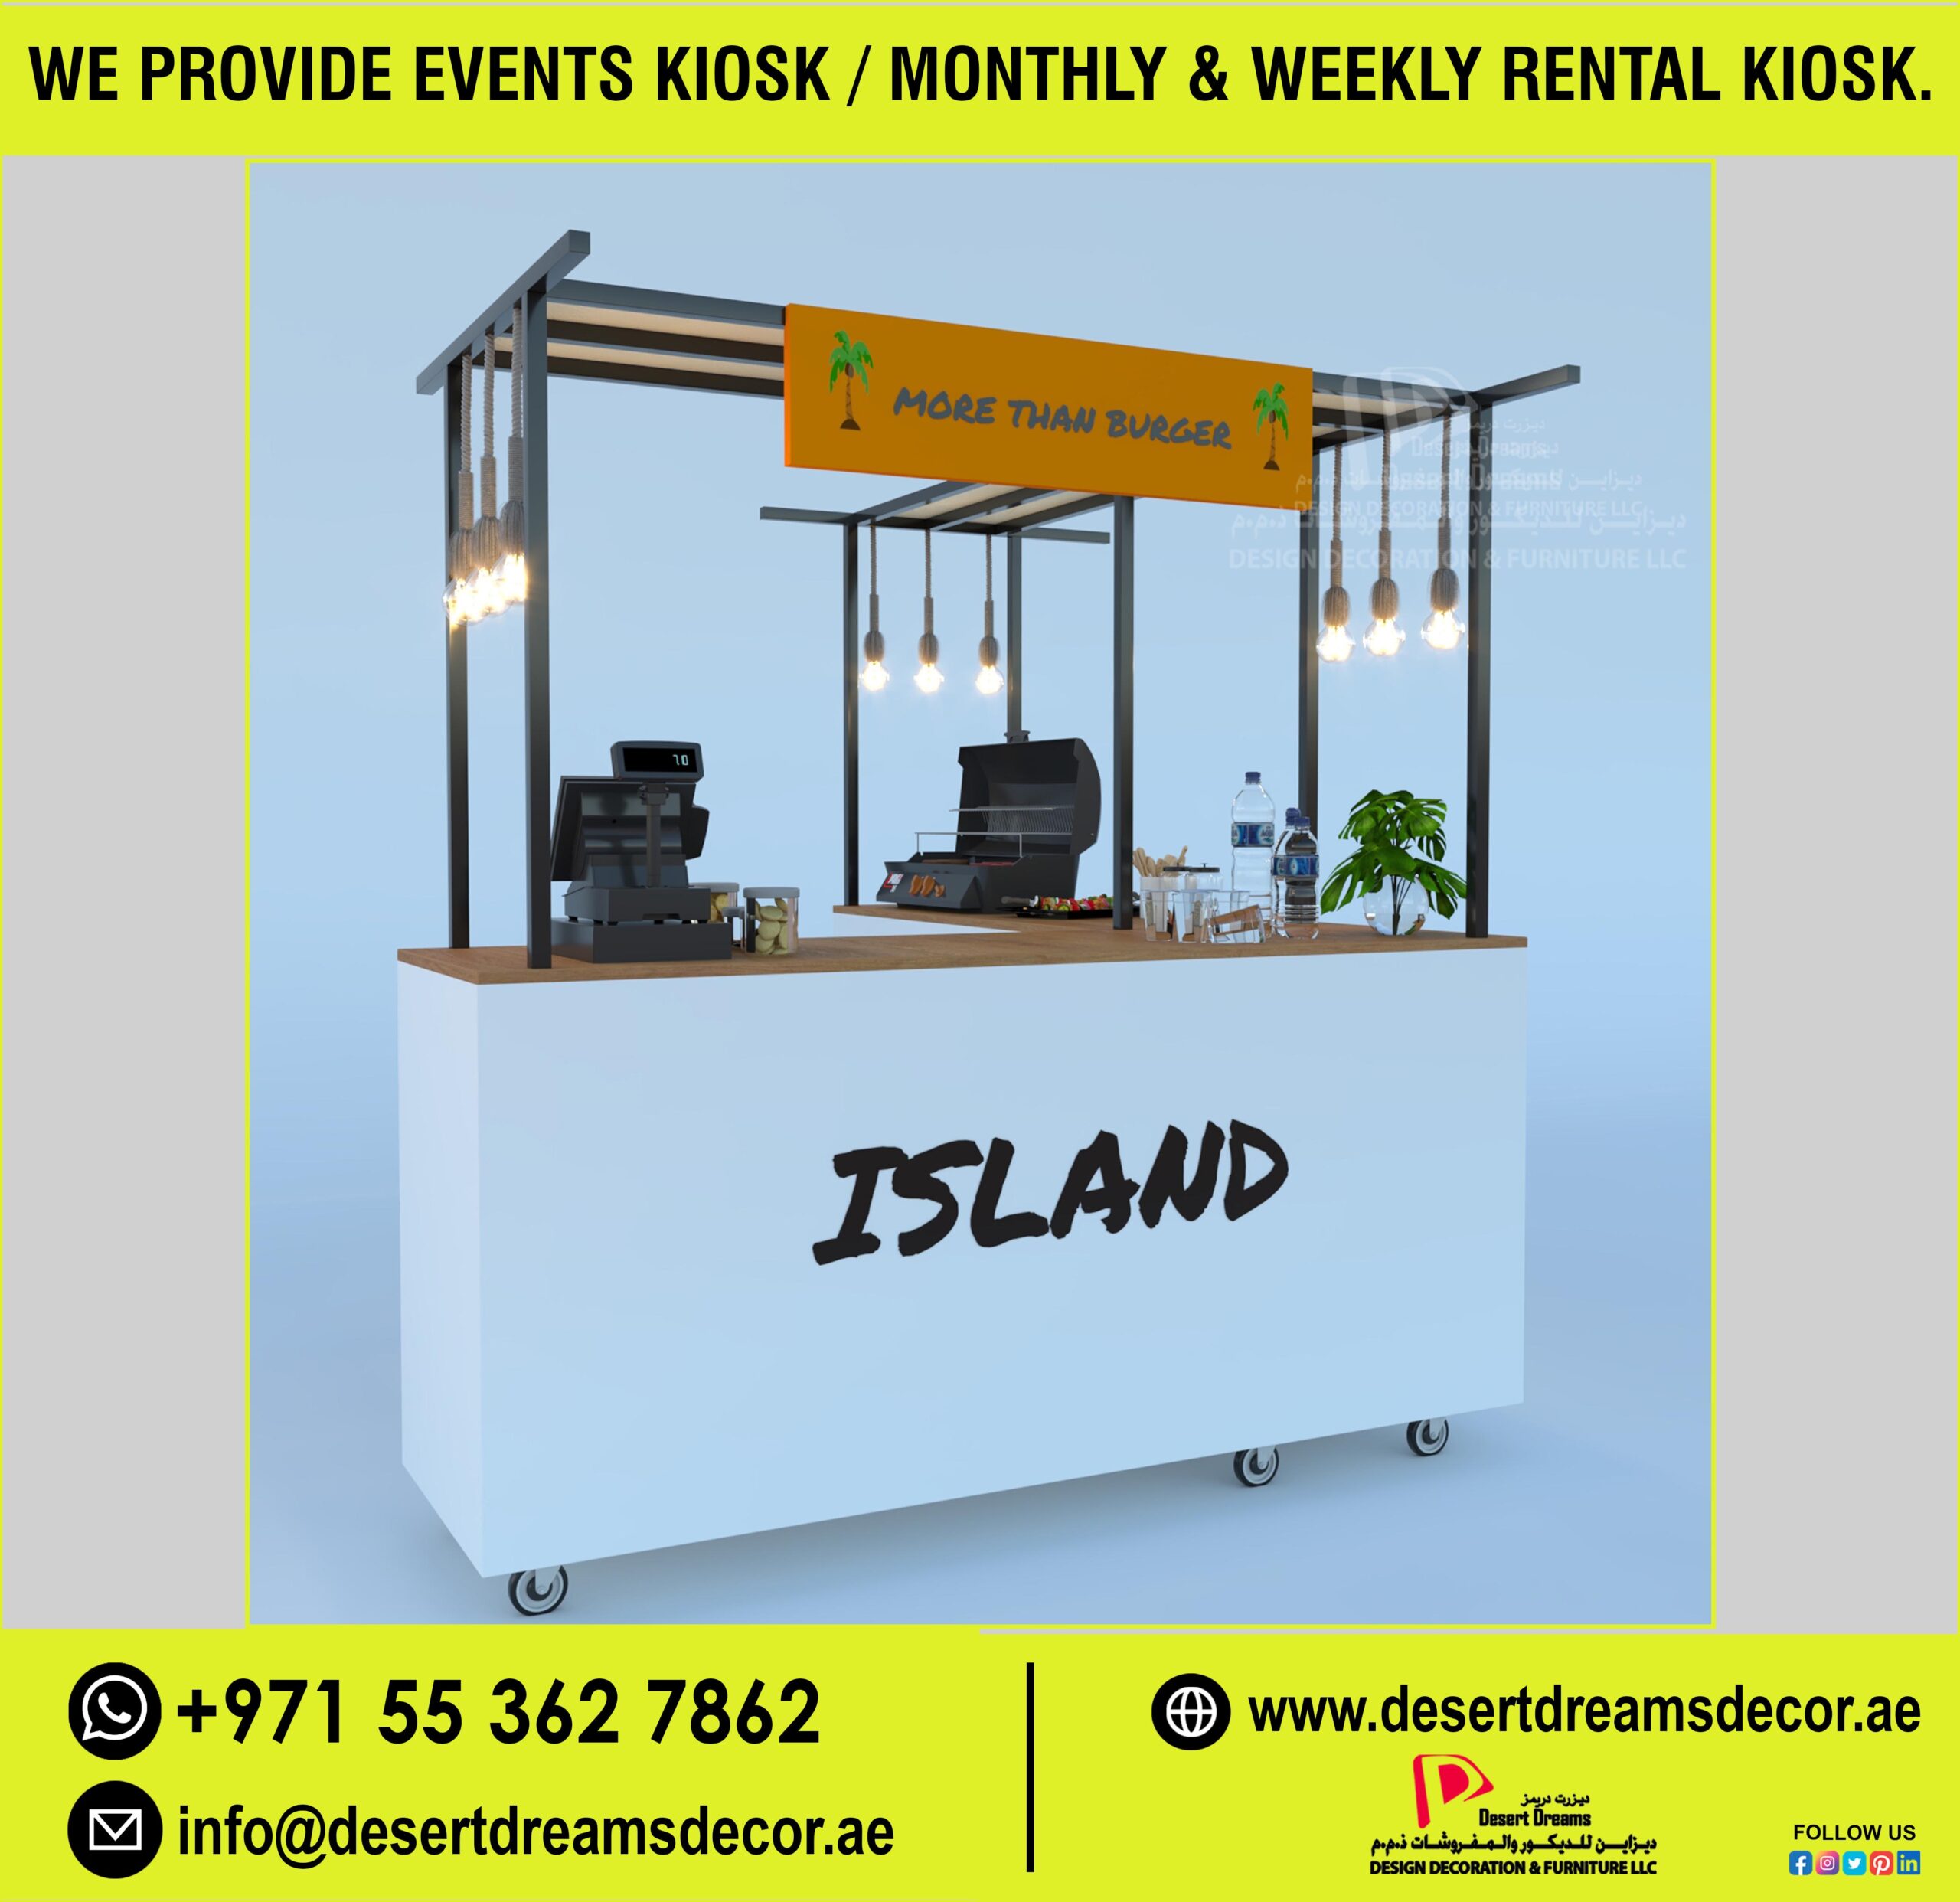 Events Kiosk Suppliers in UAE (1).jpg